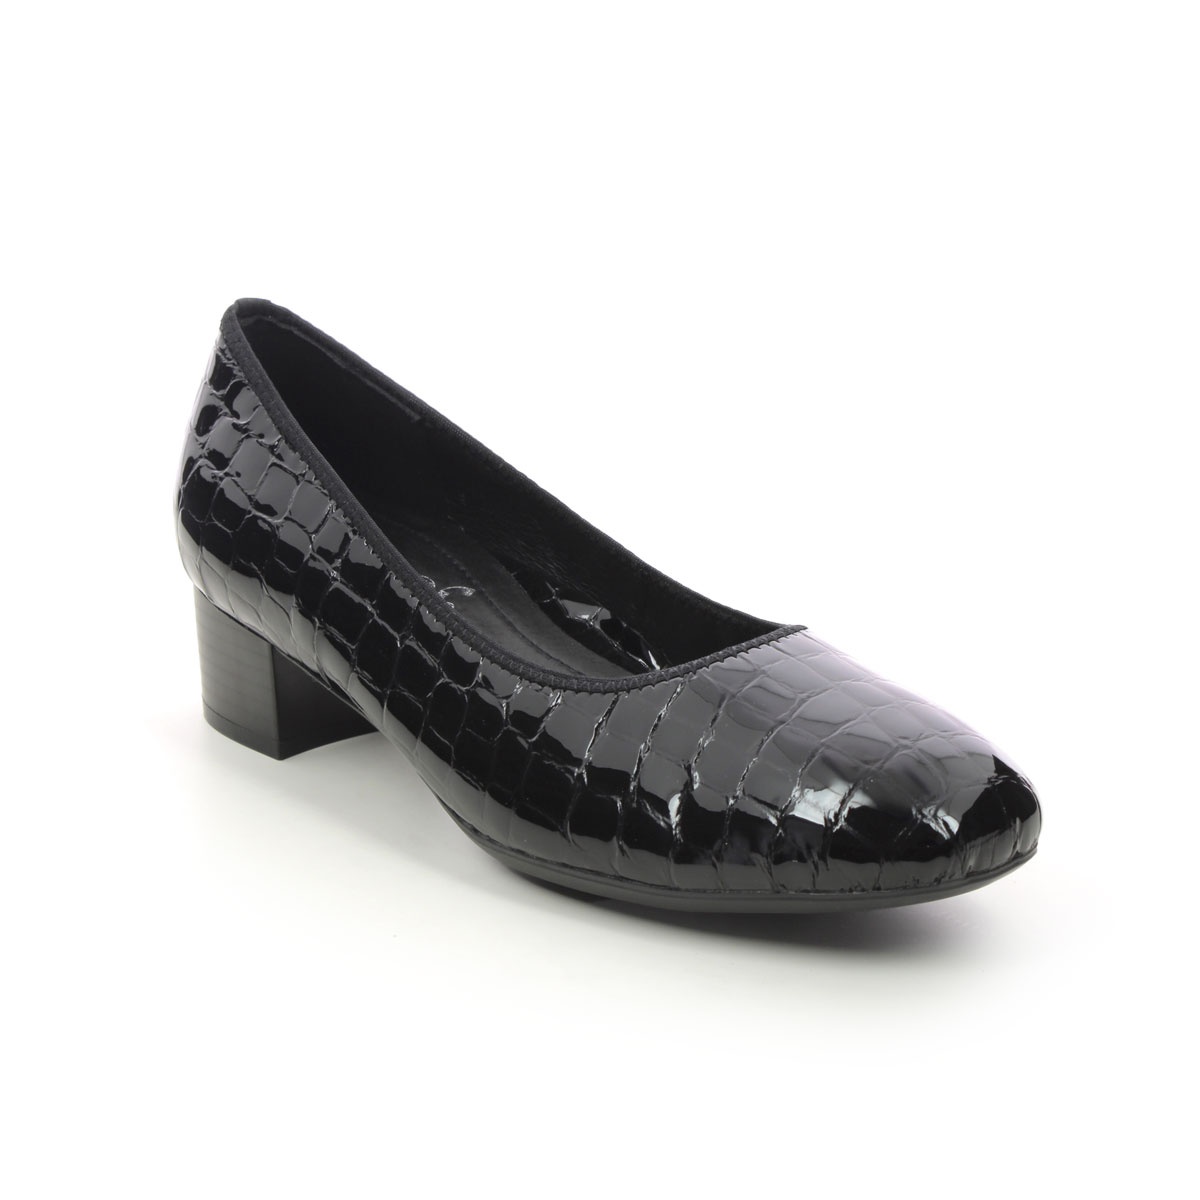 Rieker Develop Graco Black Croc Womens Court Shoes 49260-02 In Size 36 In Plain Black Croc Effect